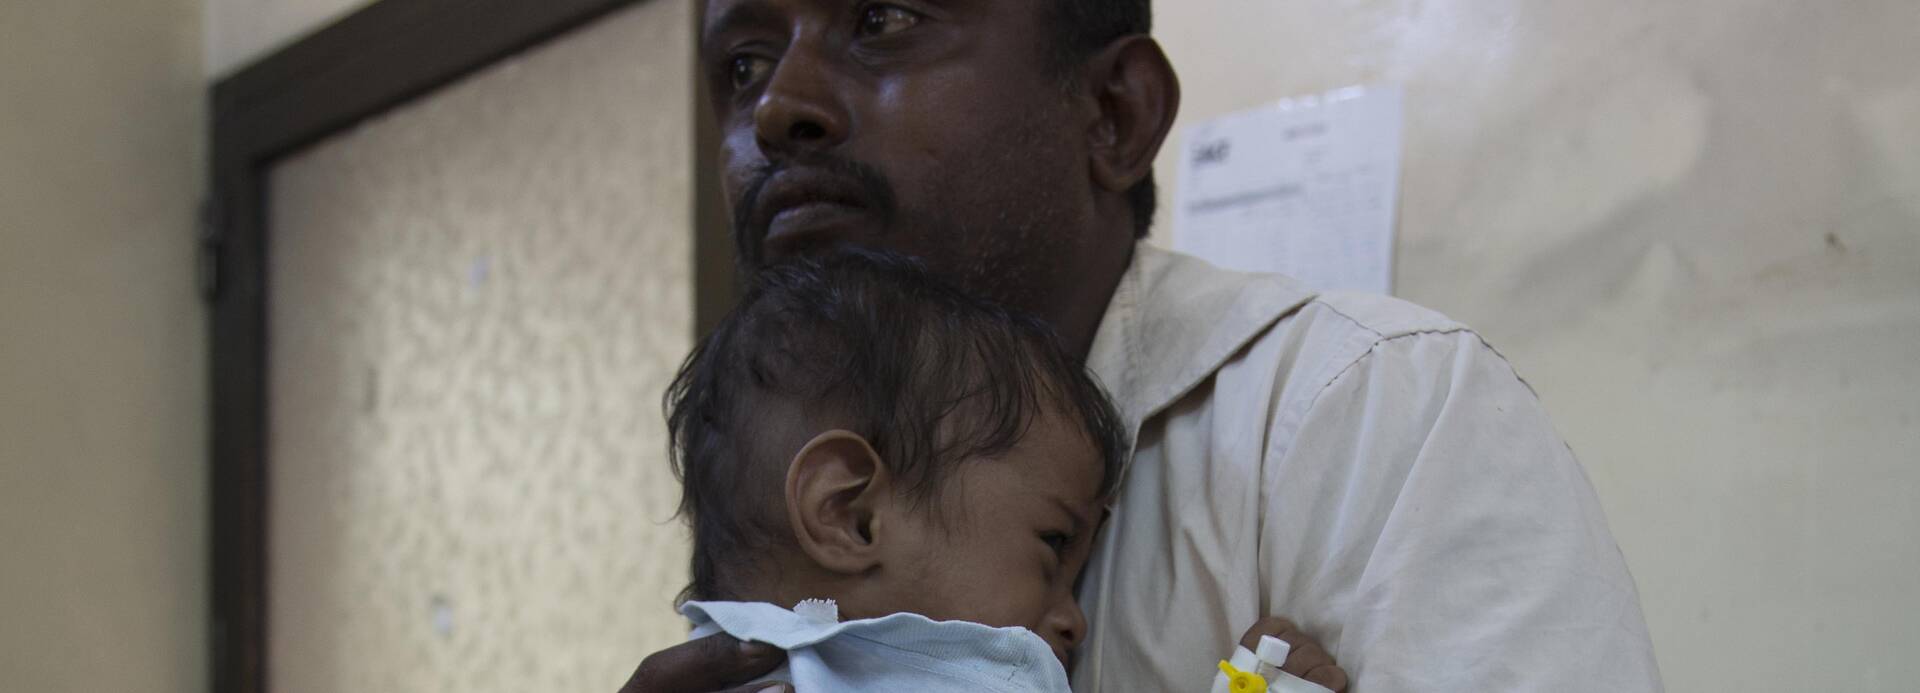 Junge im Jemen schmiegt sich an seinen Vater an